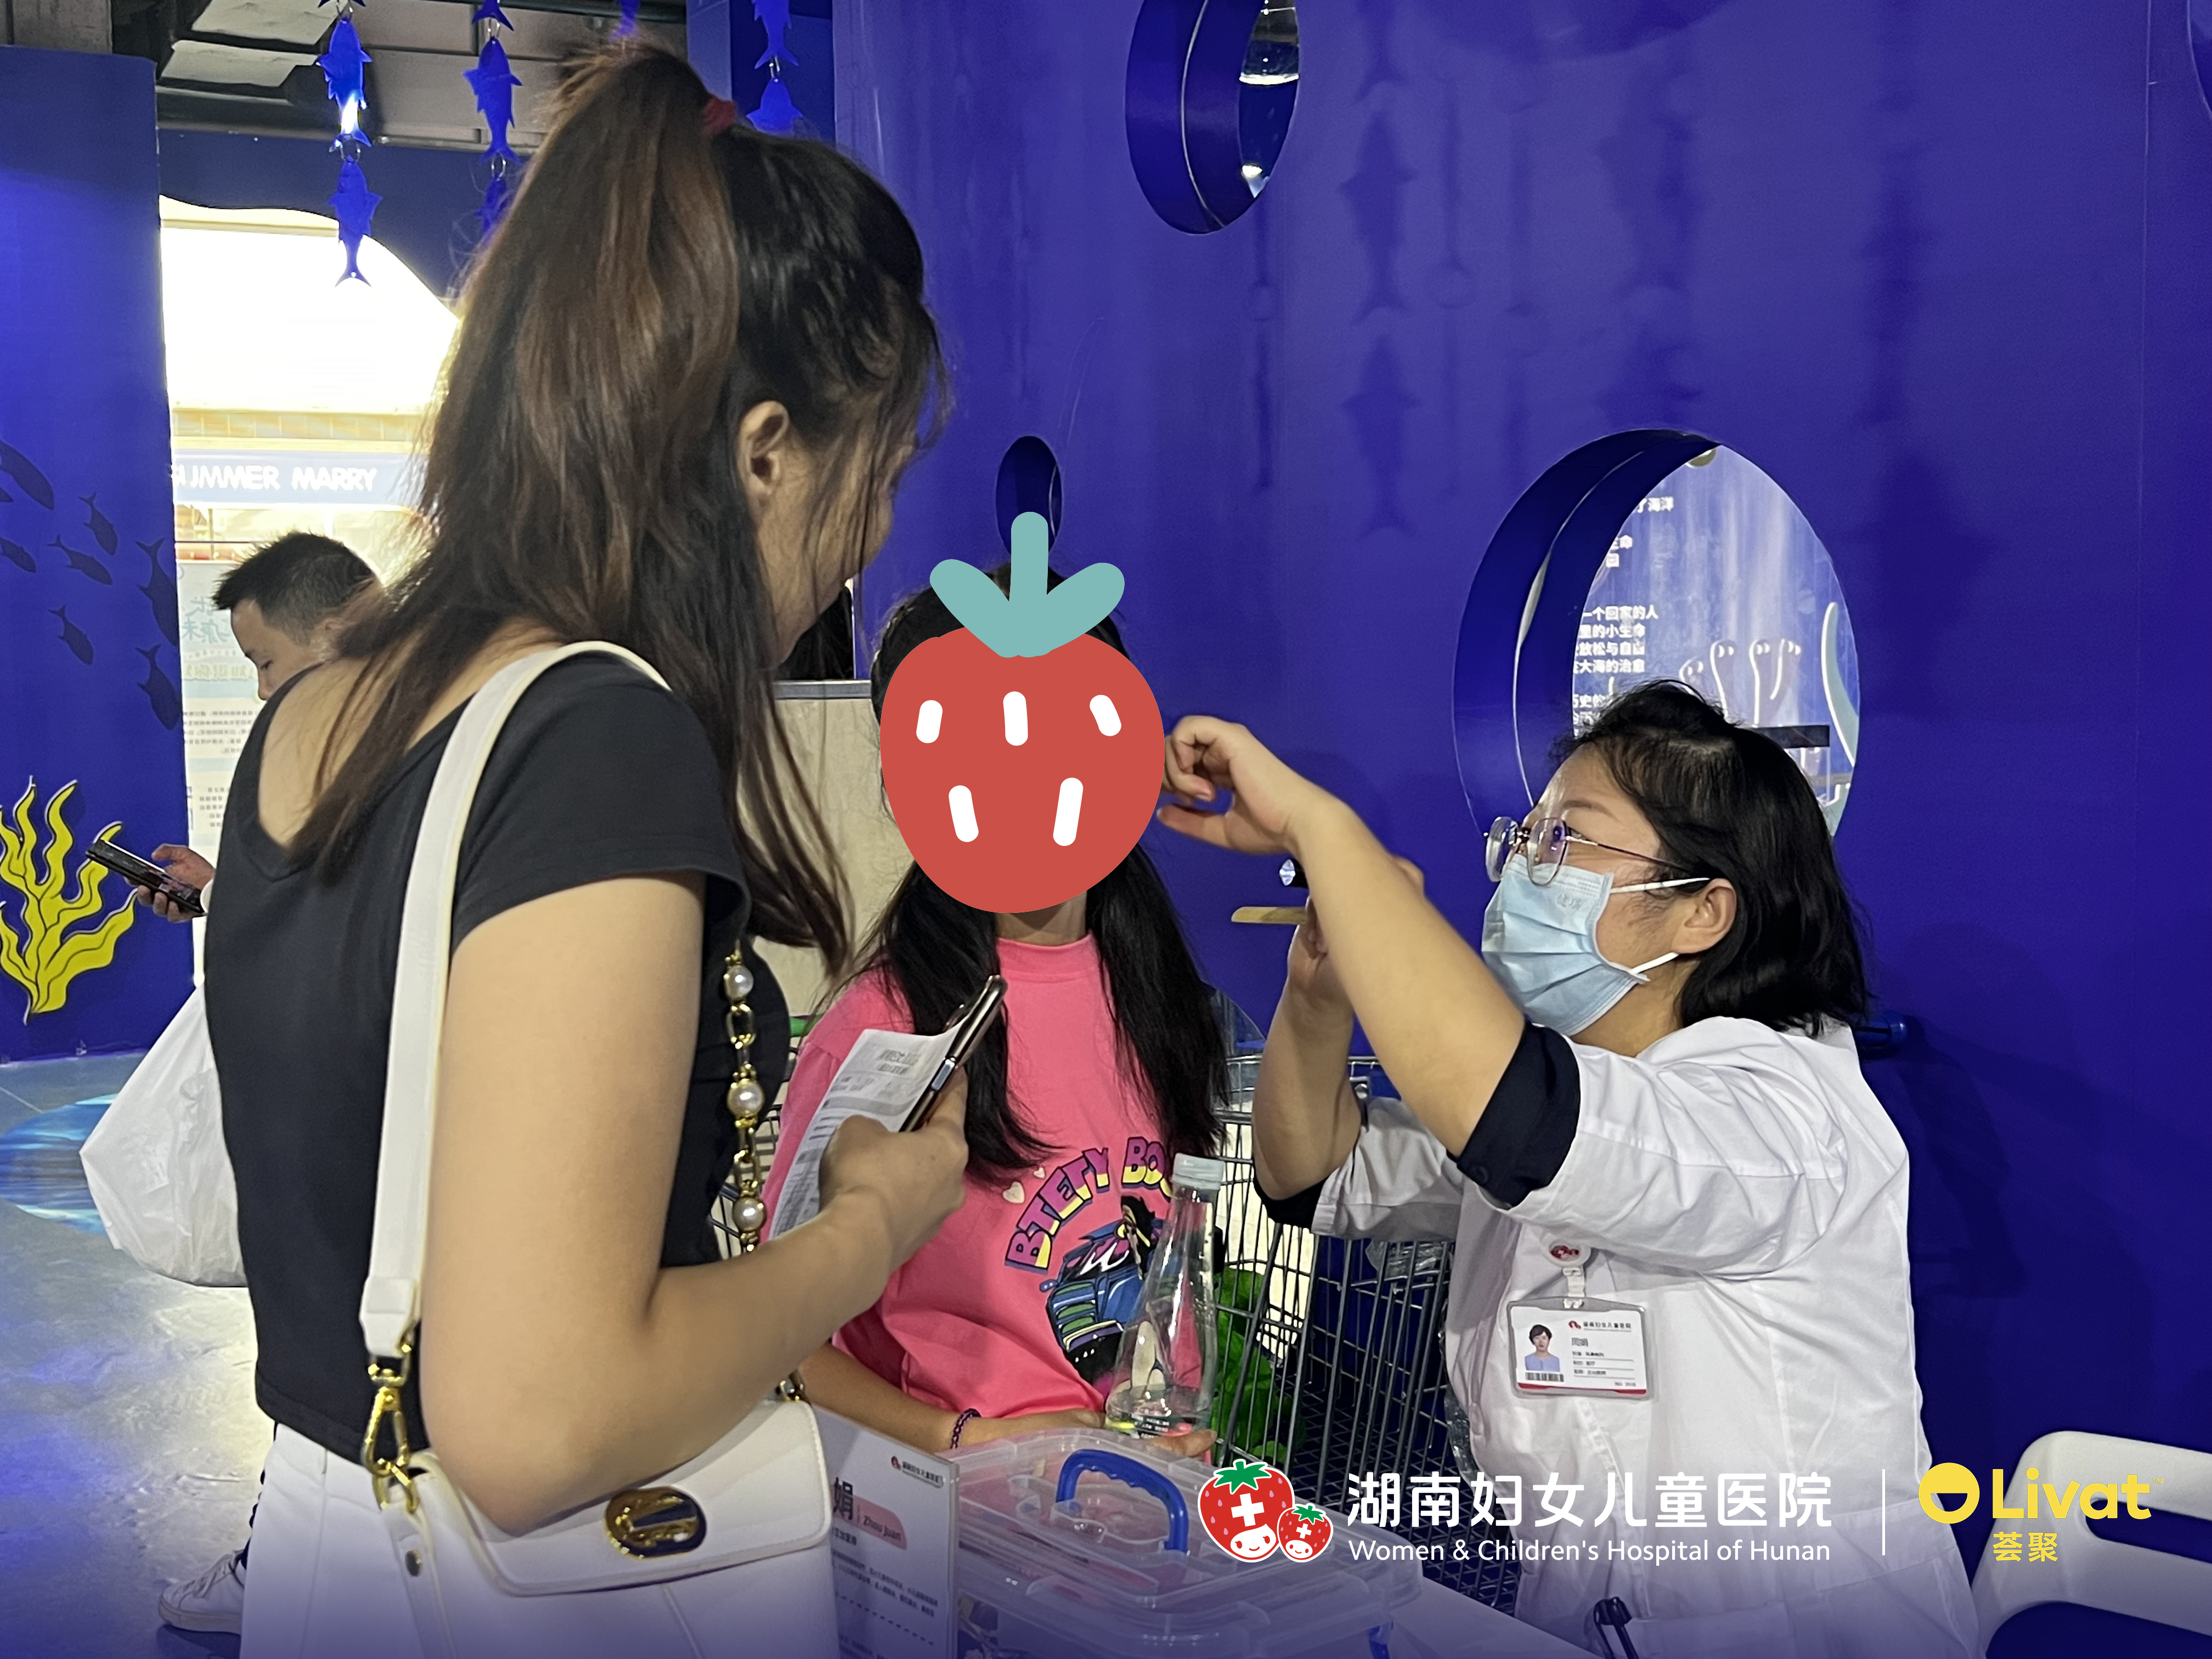 湖南妇女儿童医院联合长沙荟聚免费骨龄检测公益活动助力儿童成长